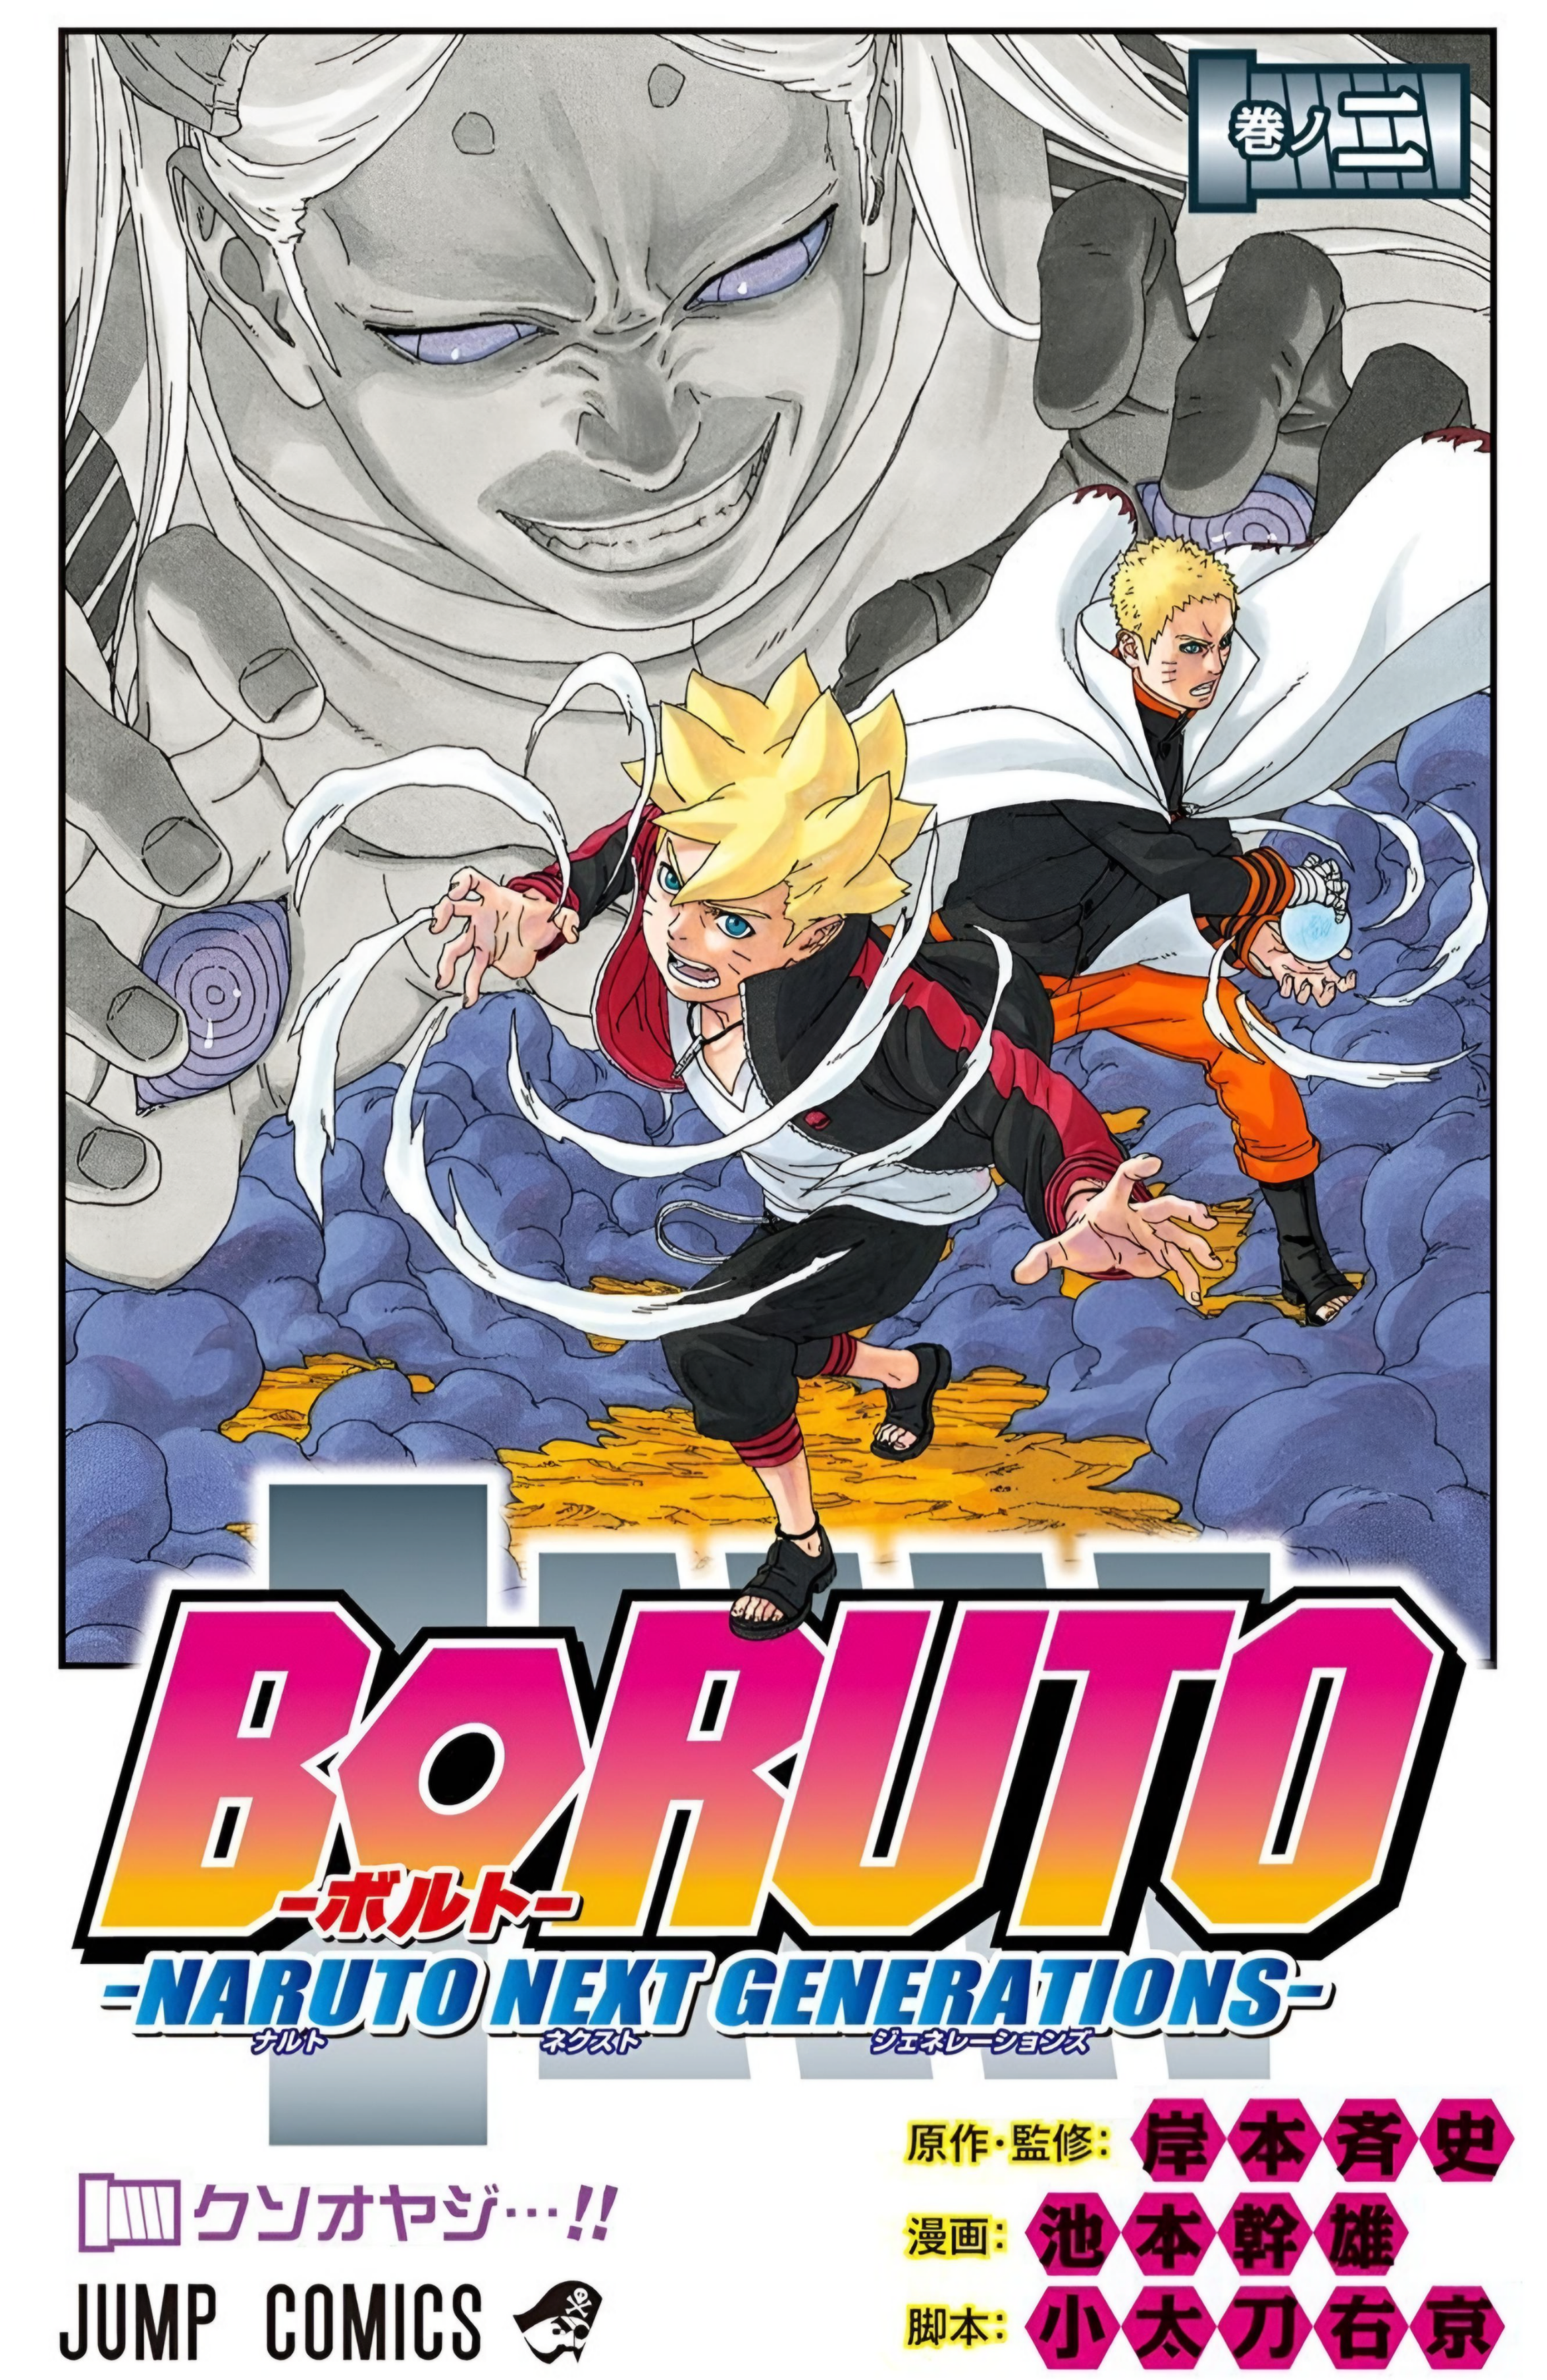 Boruto finalmente sai da sombra de Naruto, mas da pior maneira possível